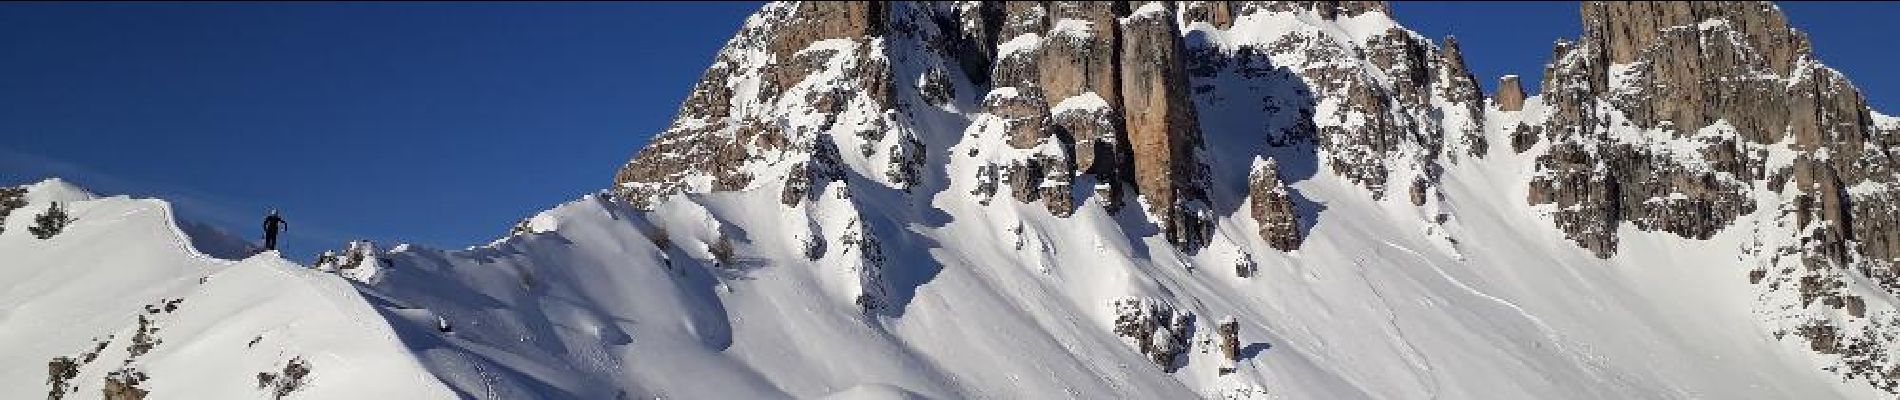 Percorso Sci alpinismo Réallon - Reallon ski rando - Photo